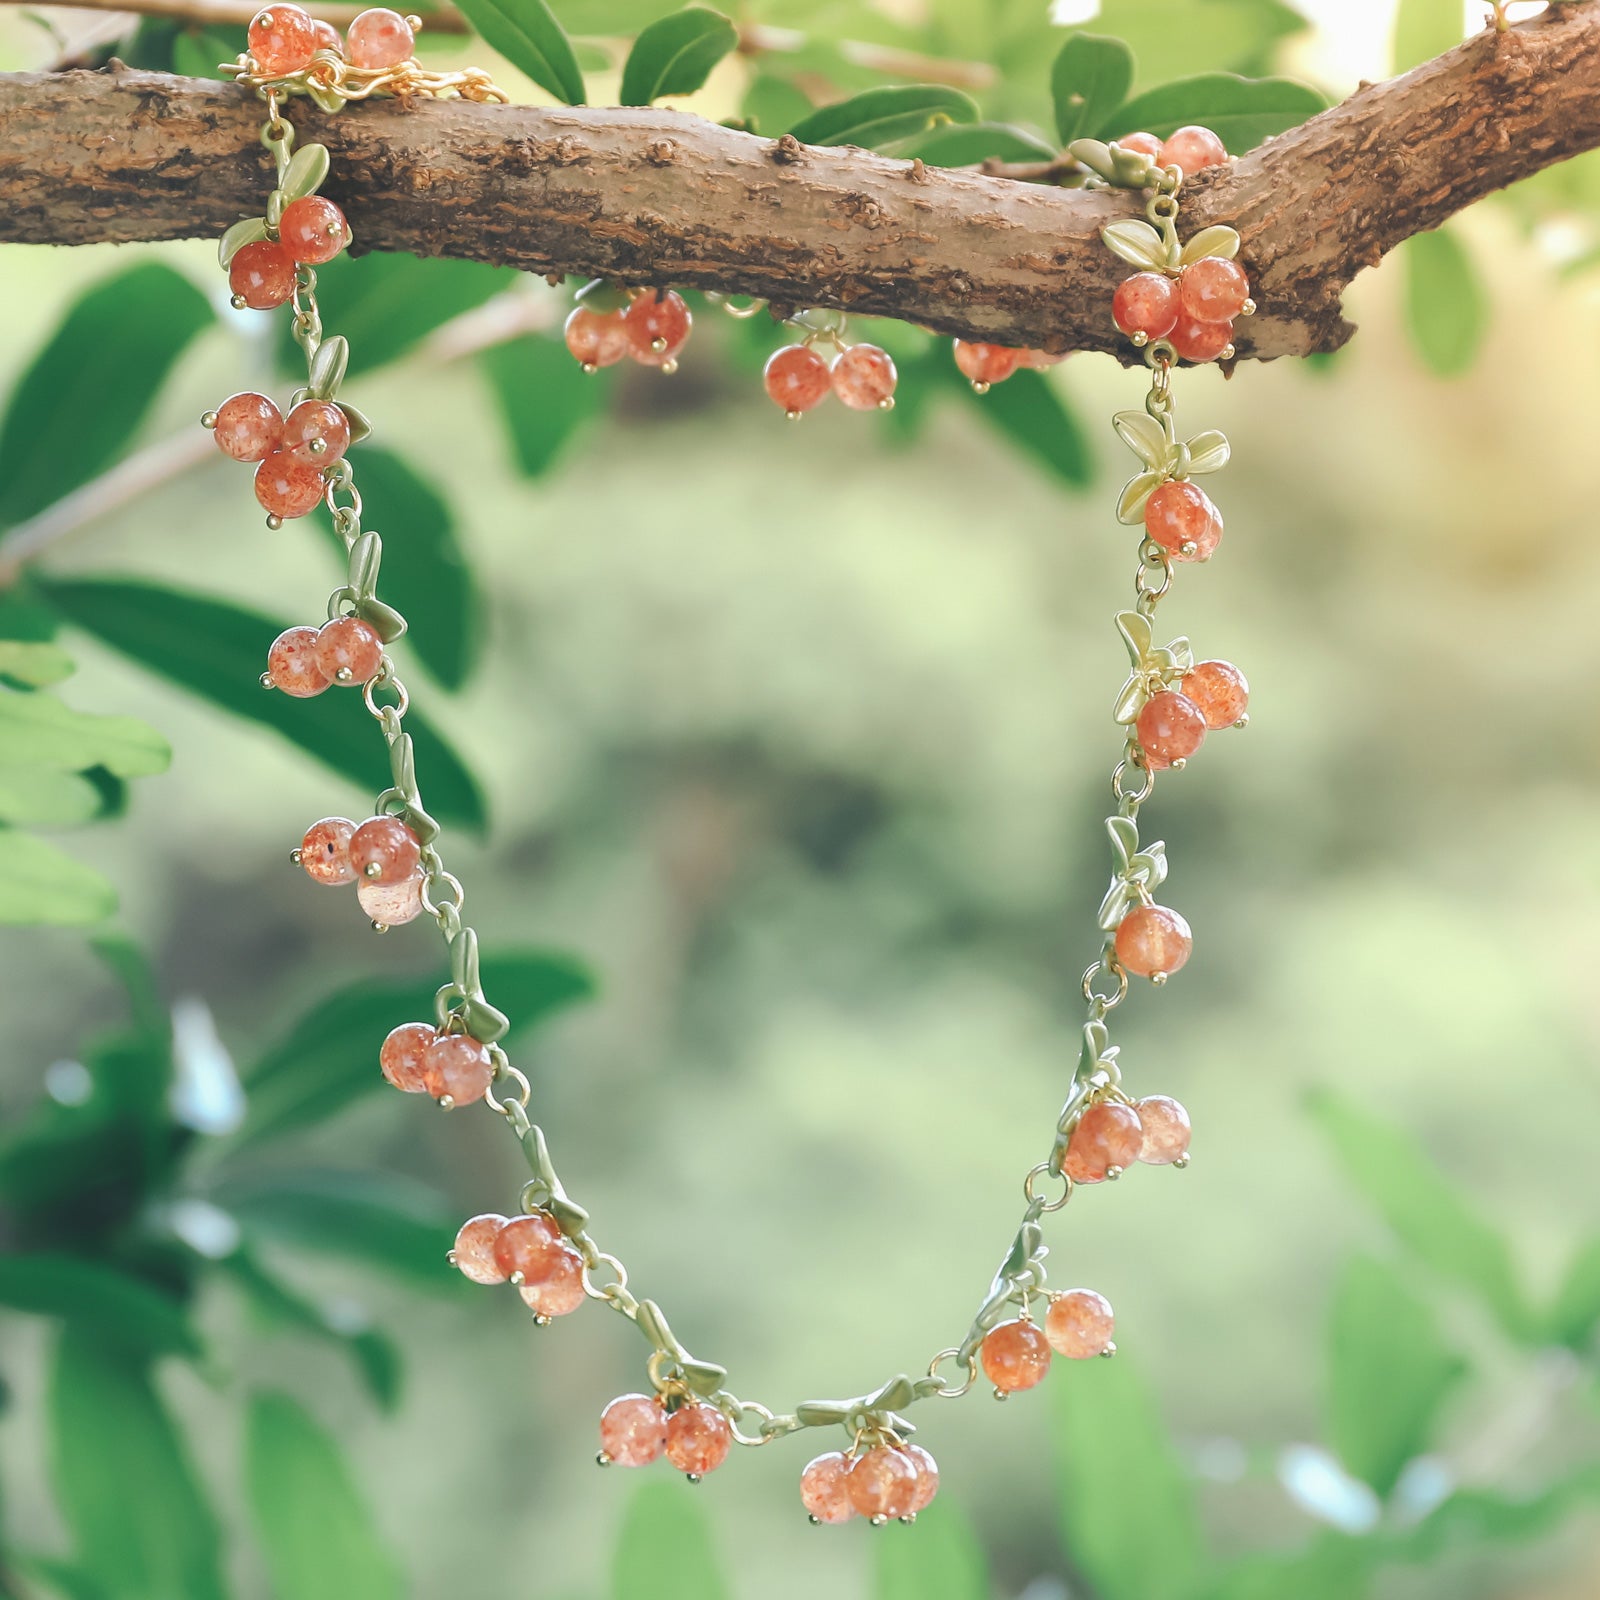 Cranberry Necklace